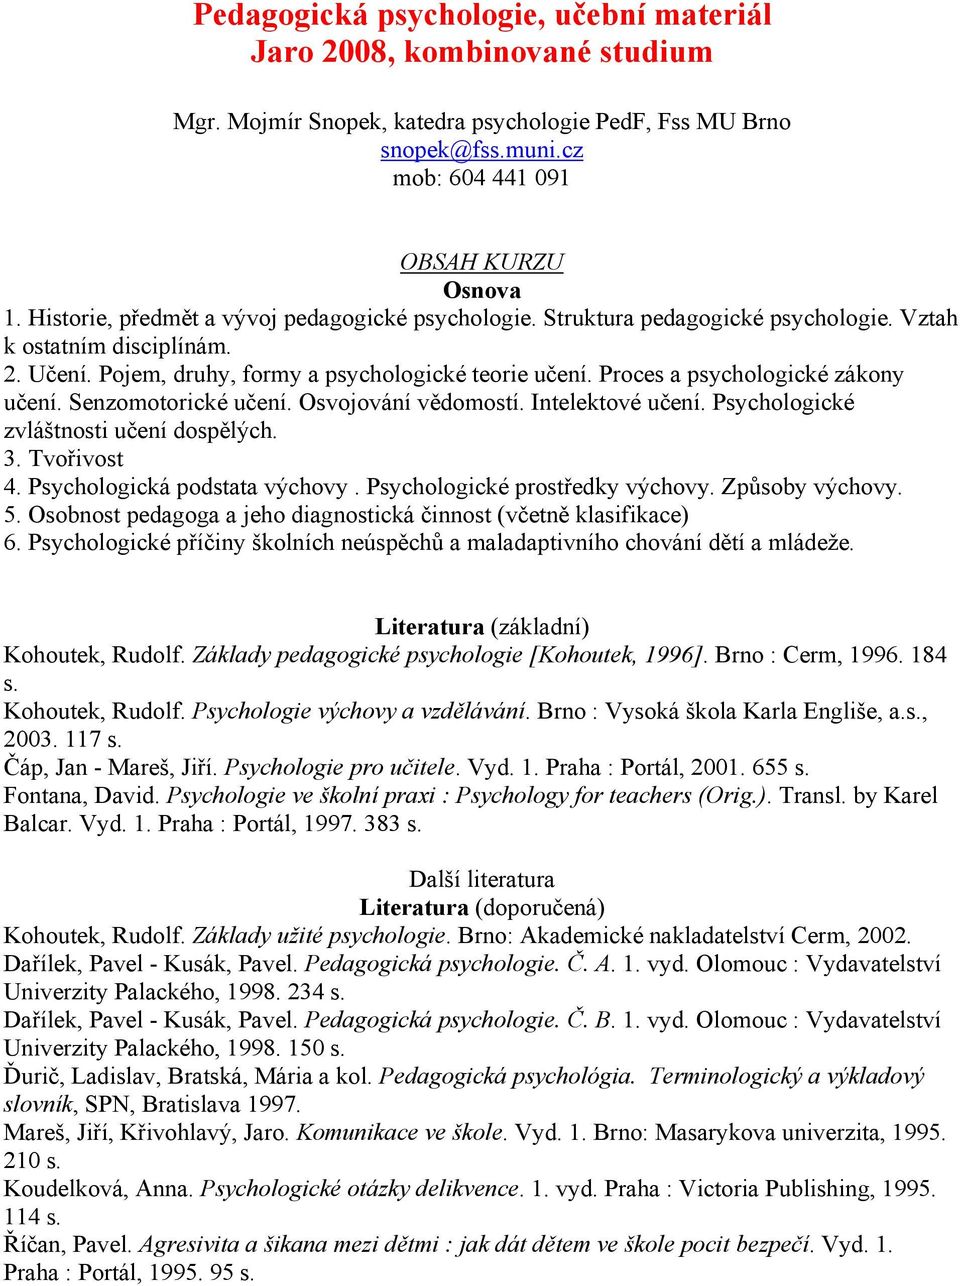 Pedagogická psychologie, učební materiál Jaro 2008, kombinované studium -  PDF Stažení zdarma